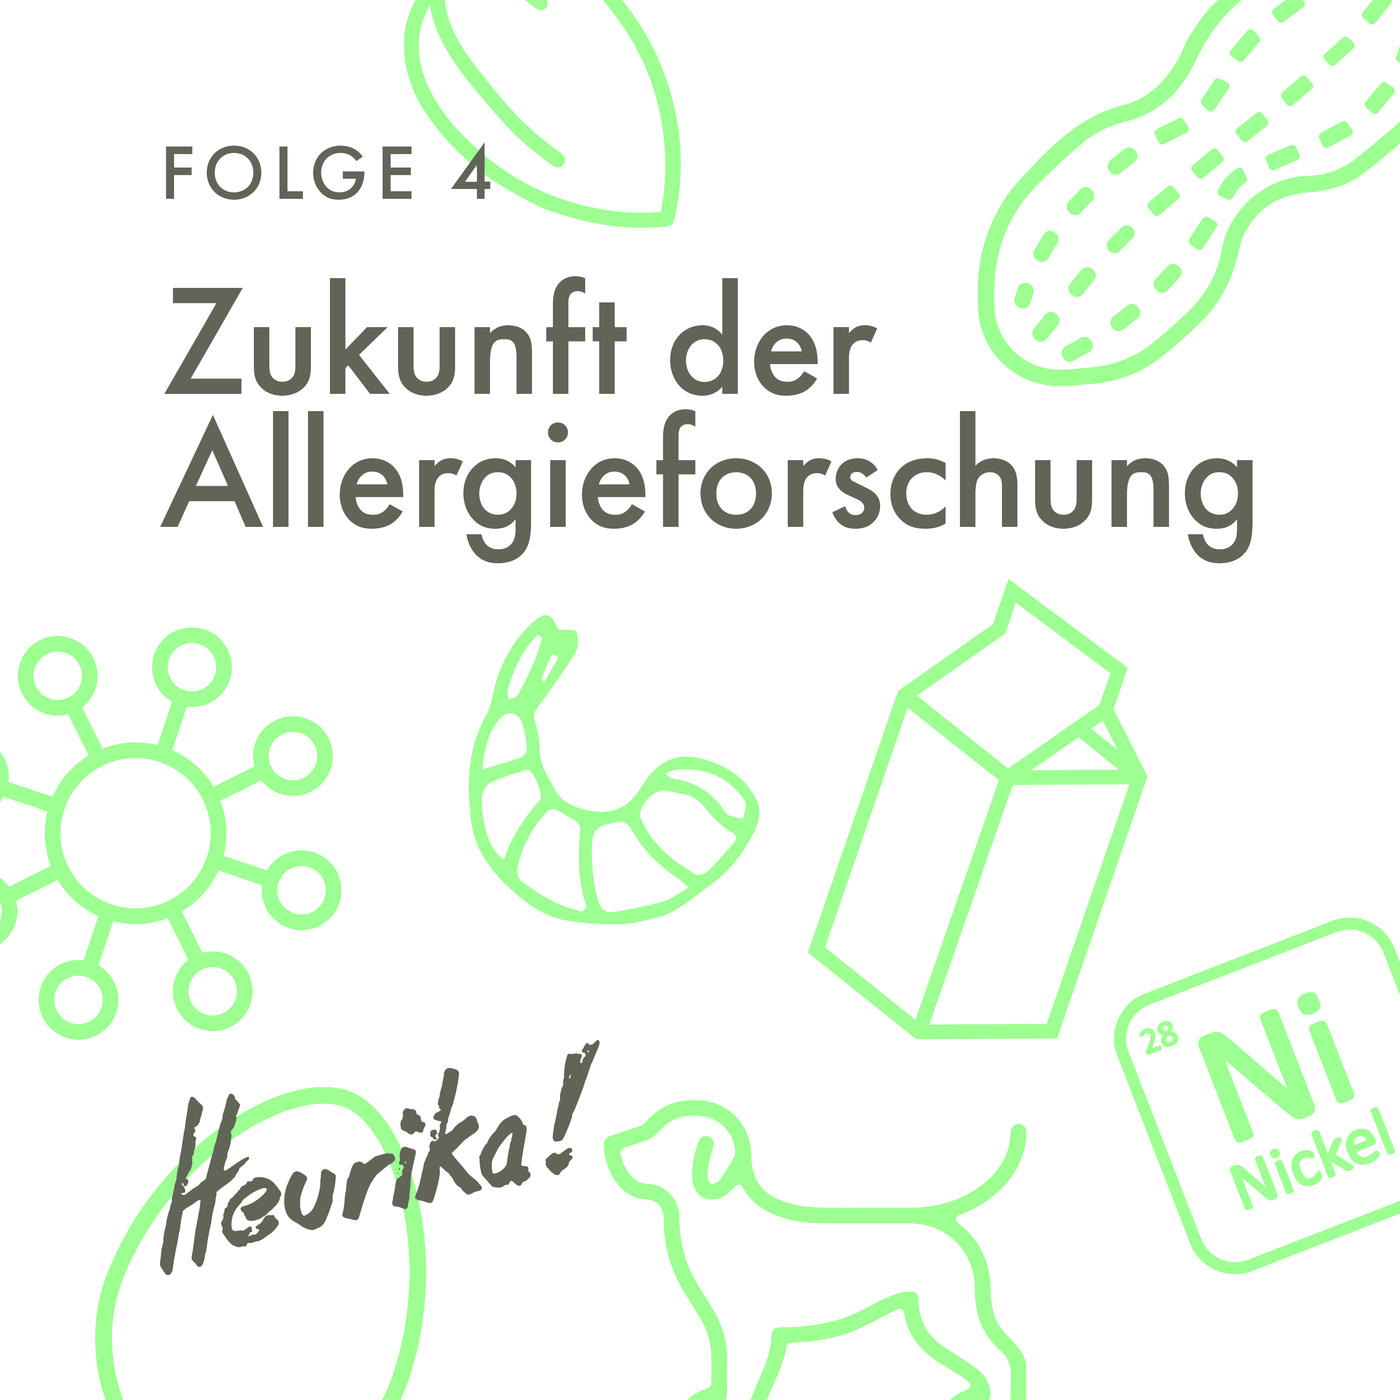 #4: Zukunft der Allergieforschung